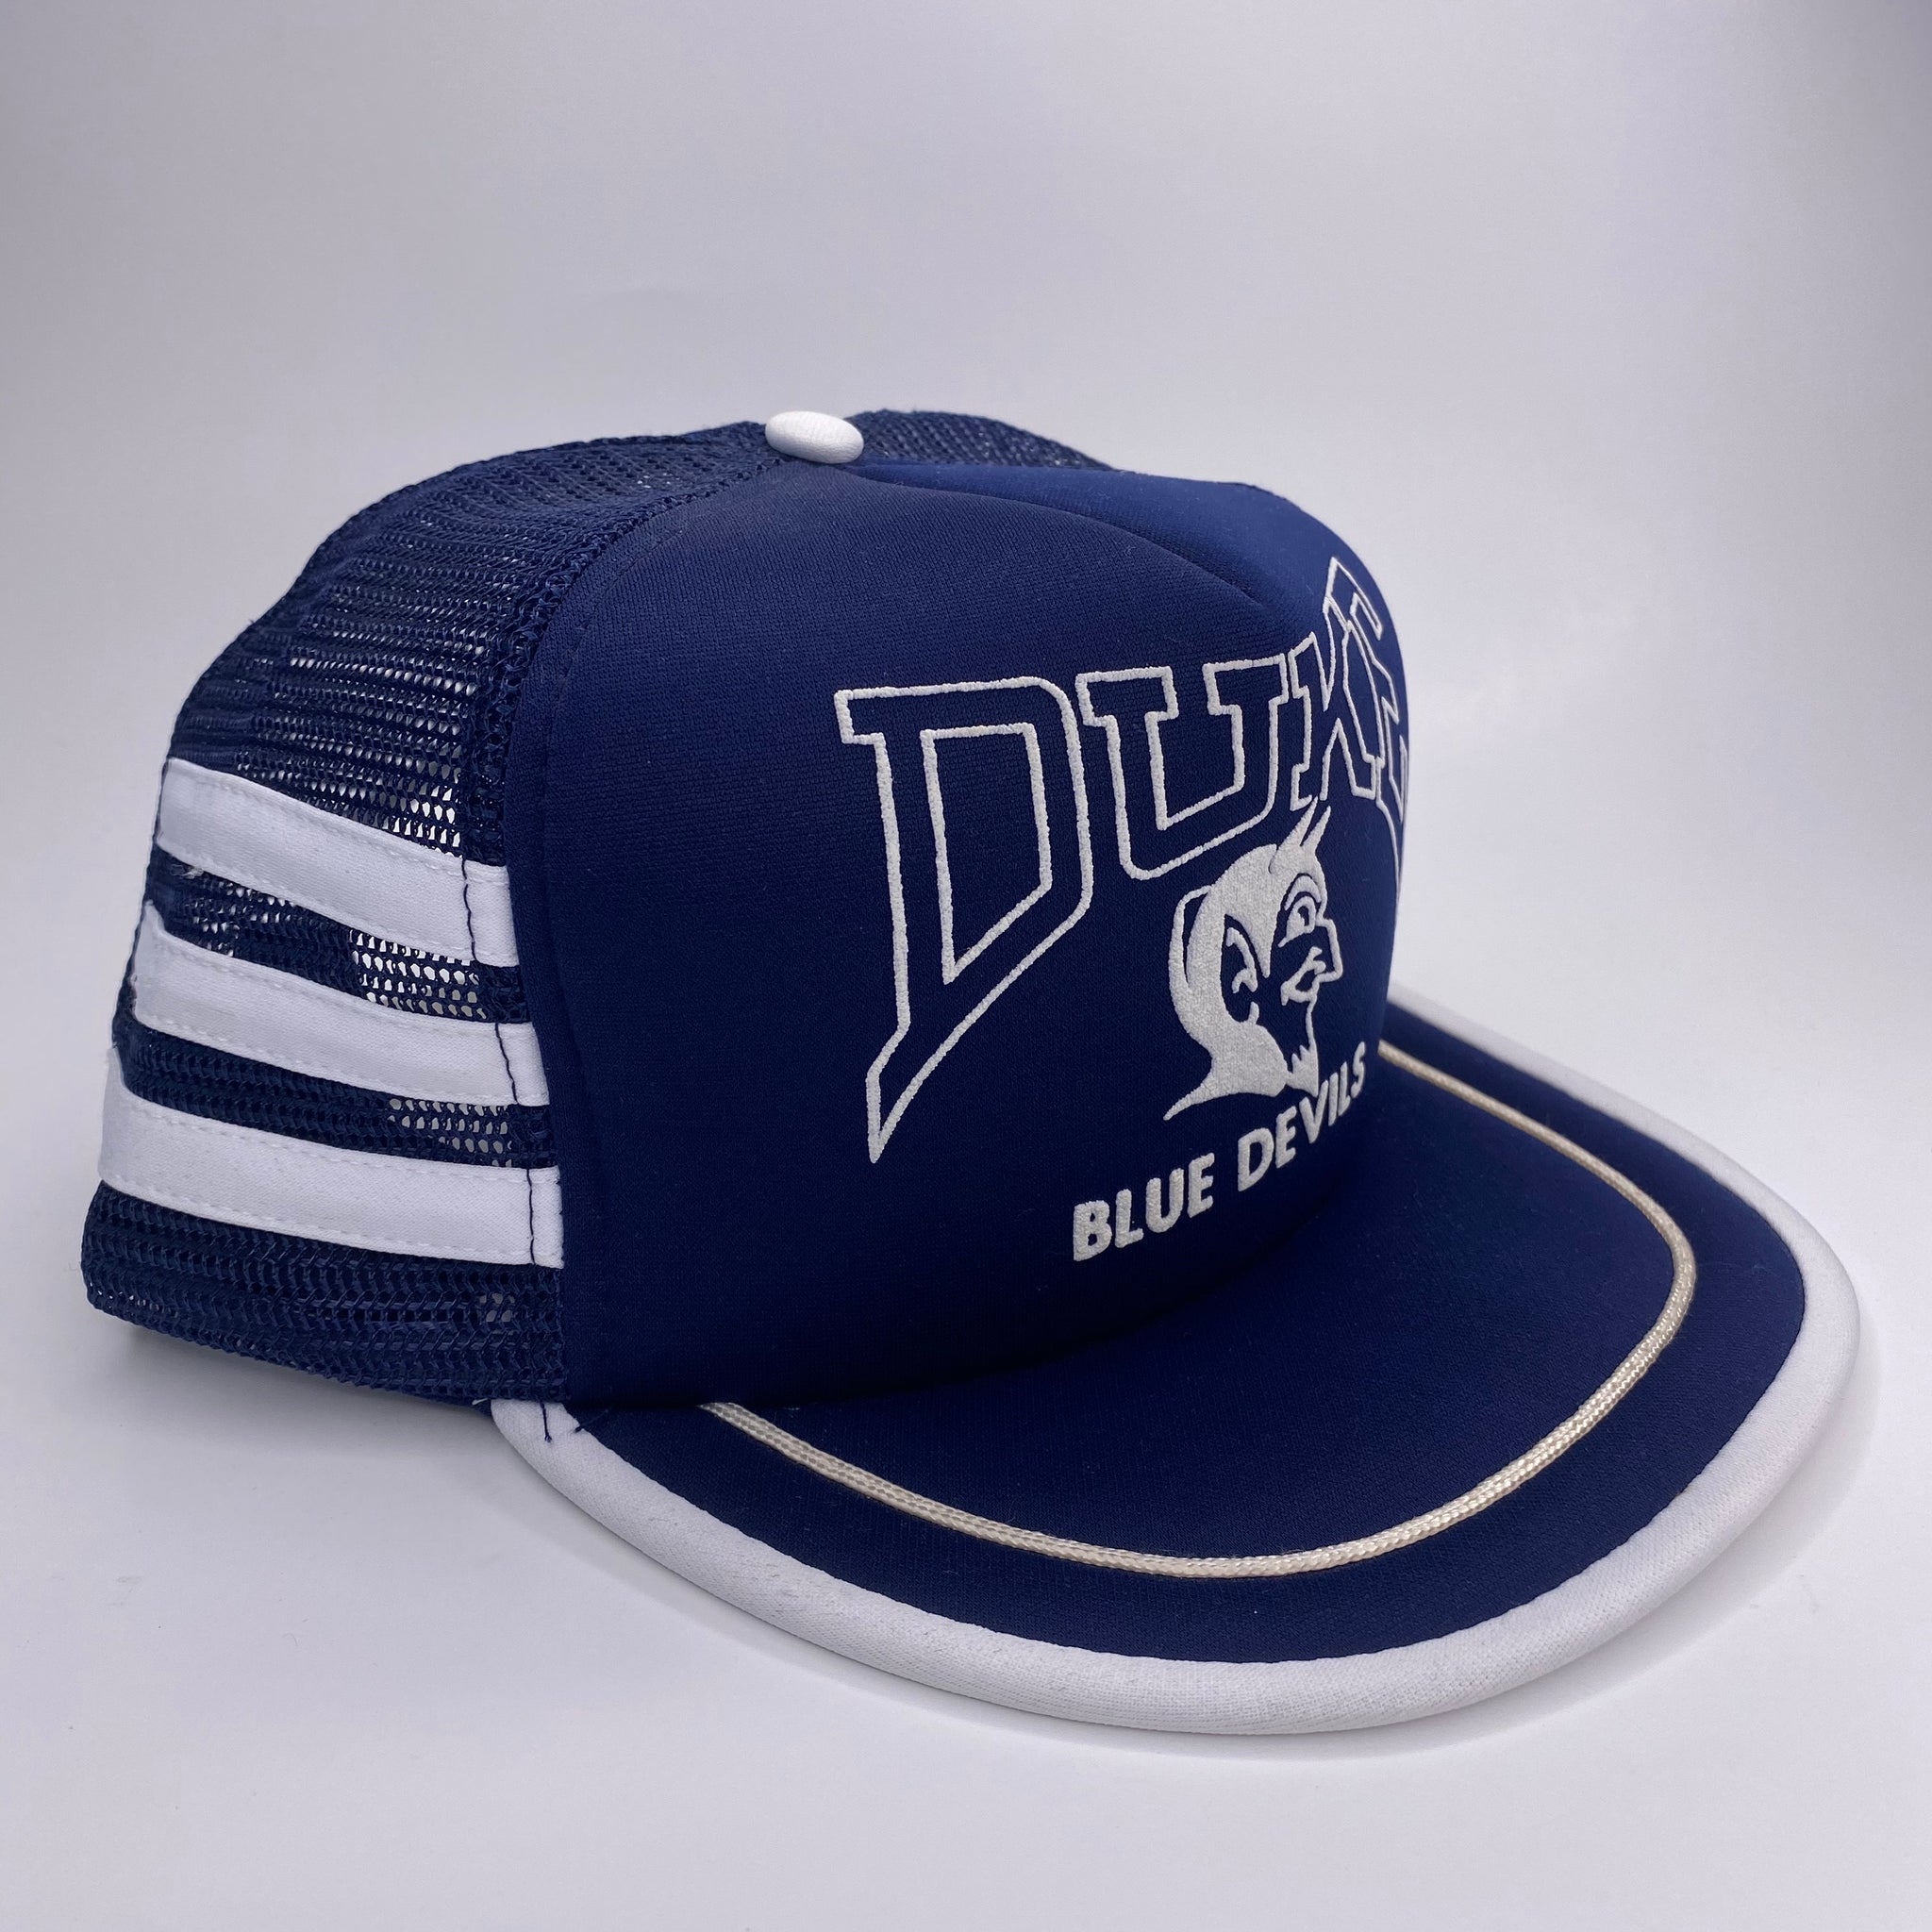 Duke Blue Devils Vintage 90s Snapback Hat Black and Blue College Unive